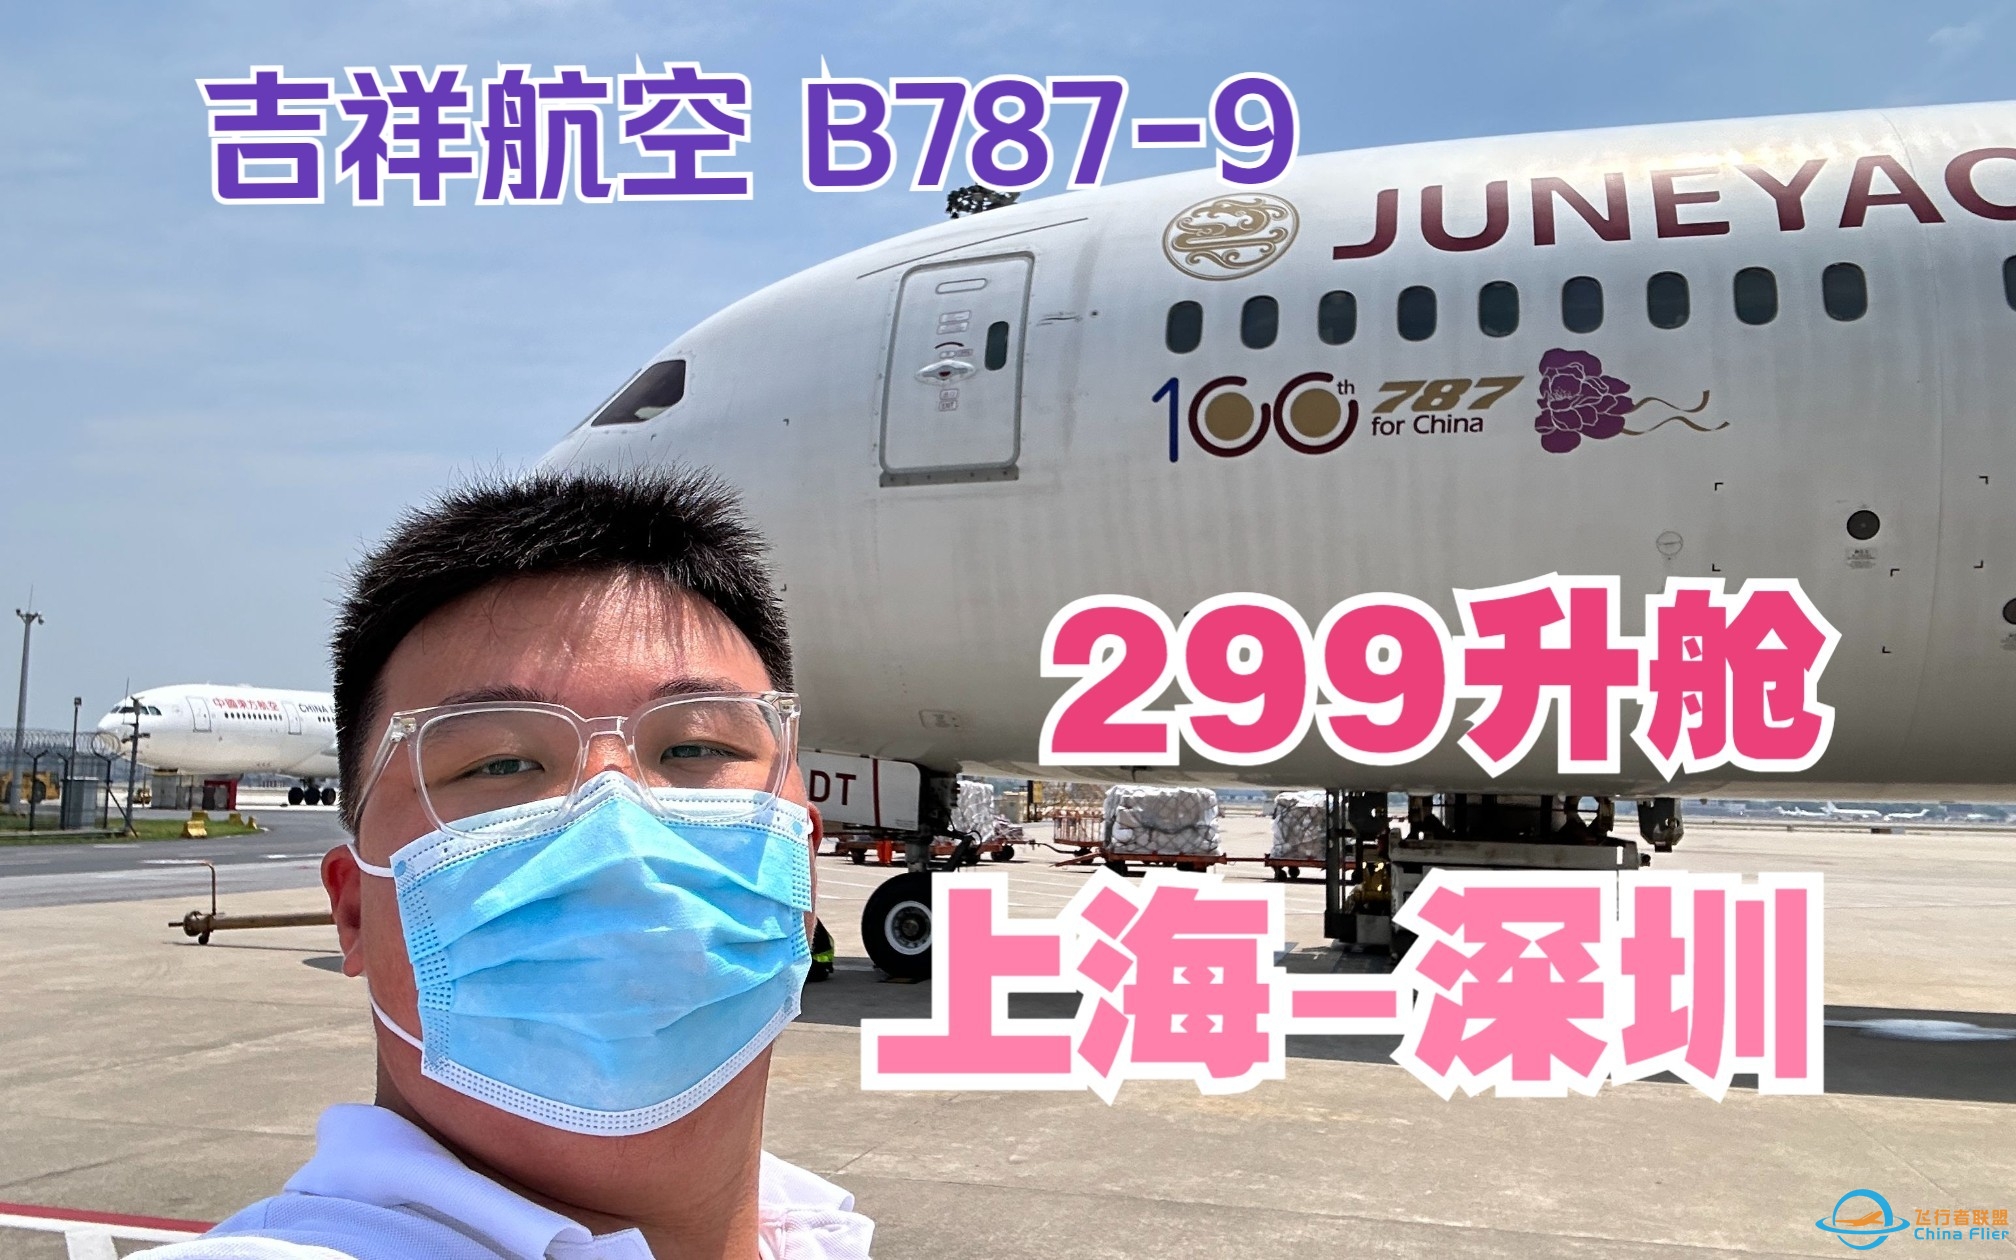 花个299升舱值吗？吉祥航空 B787-9 上海-深圳 商务舱飞行体验-4497 